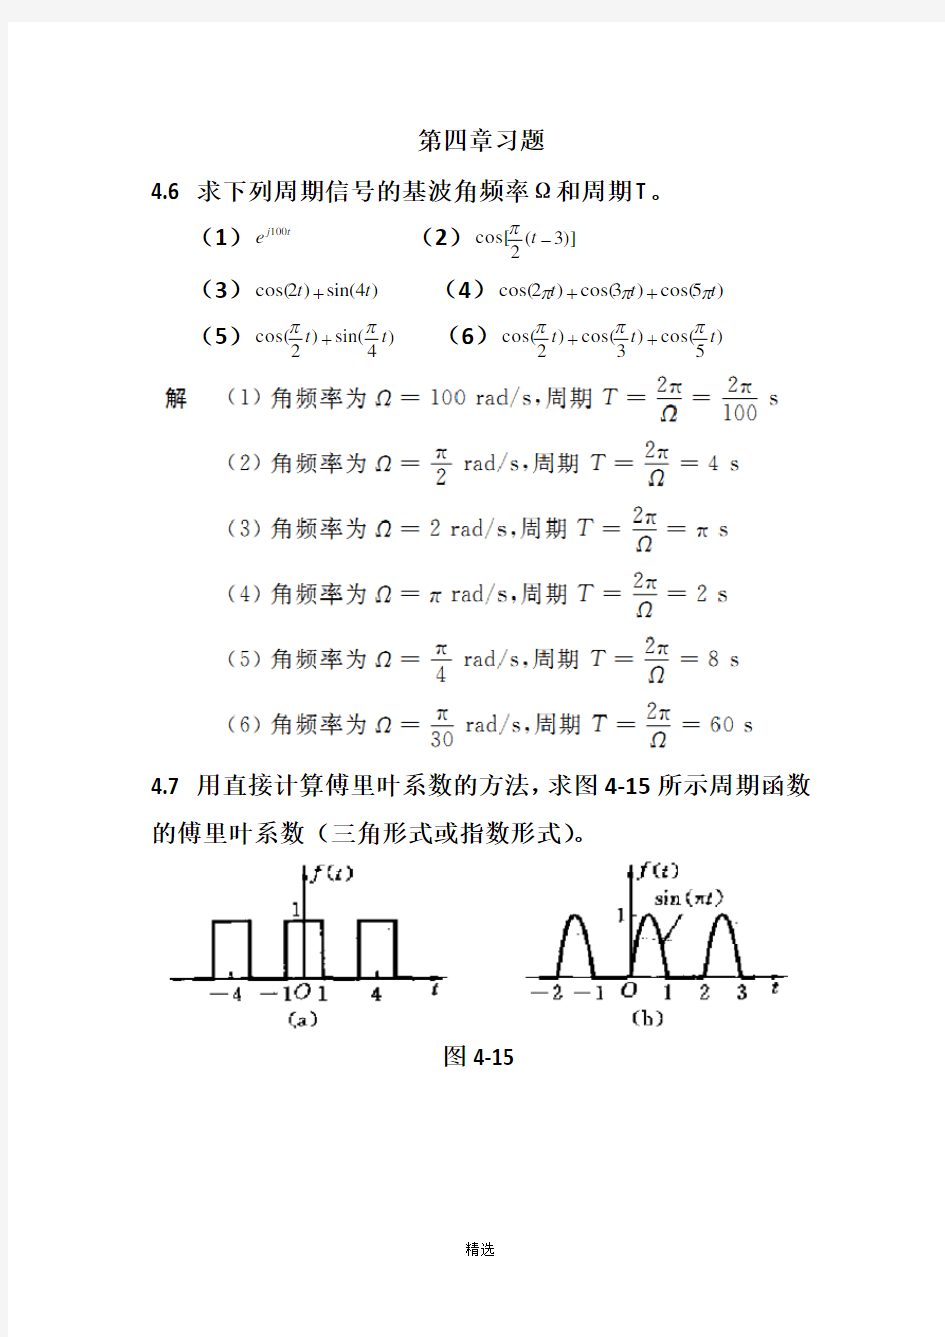 信号与线性系统分析-(吴大正-第四版)第四章习题答案